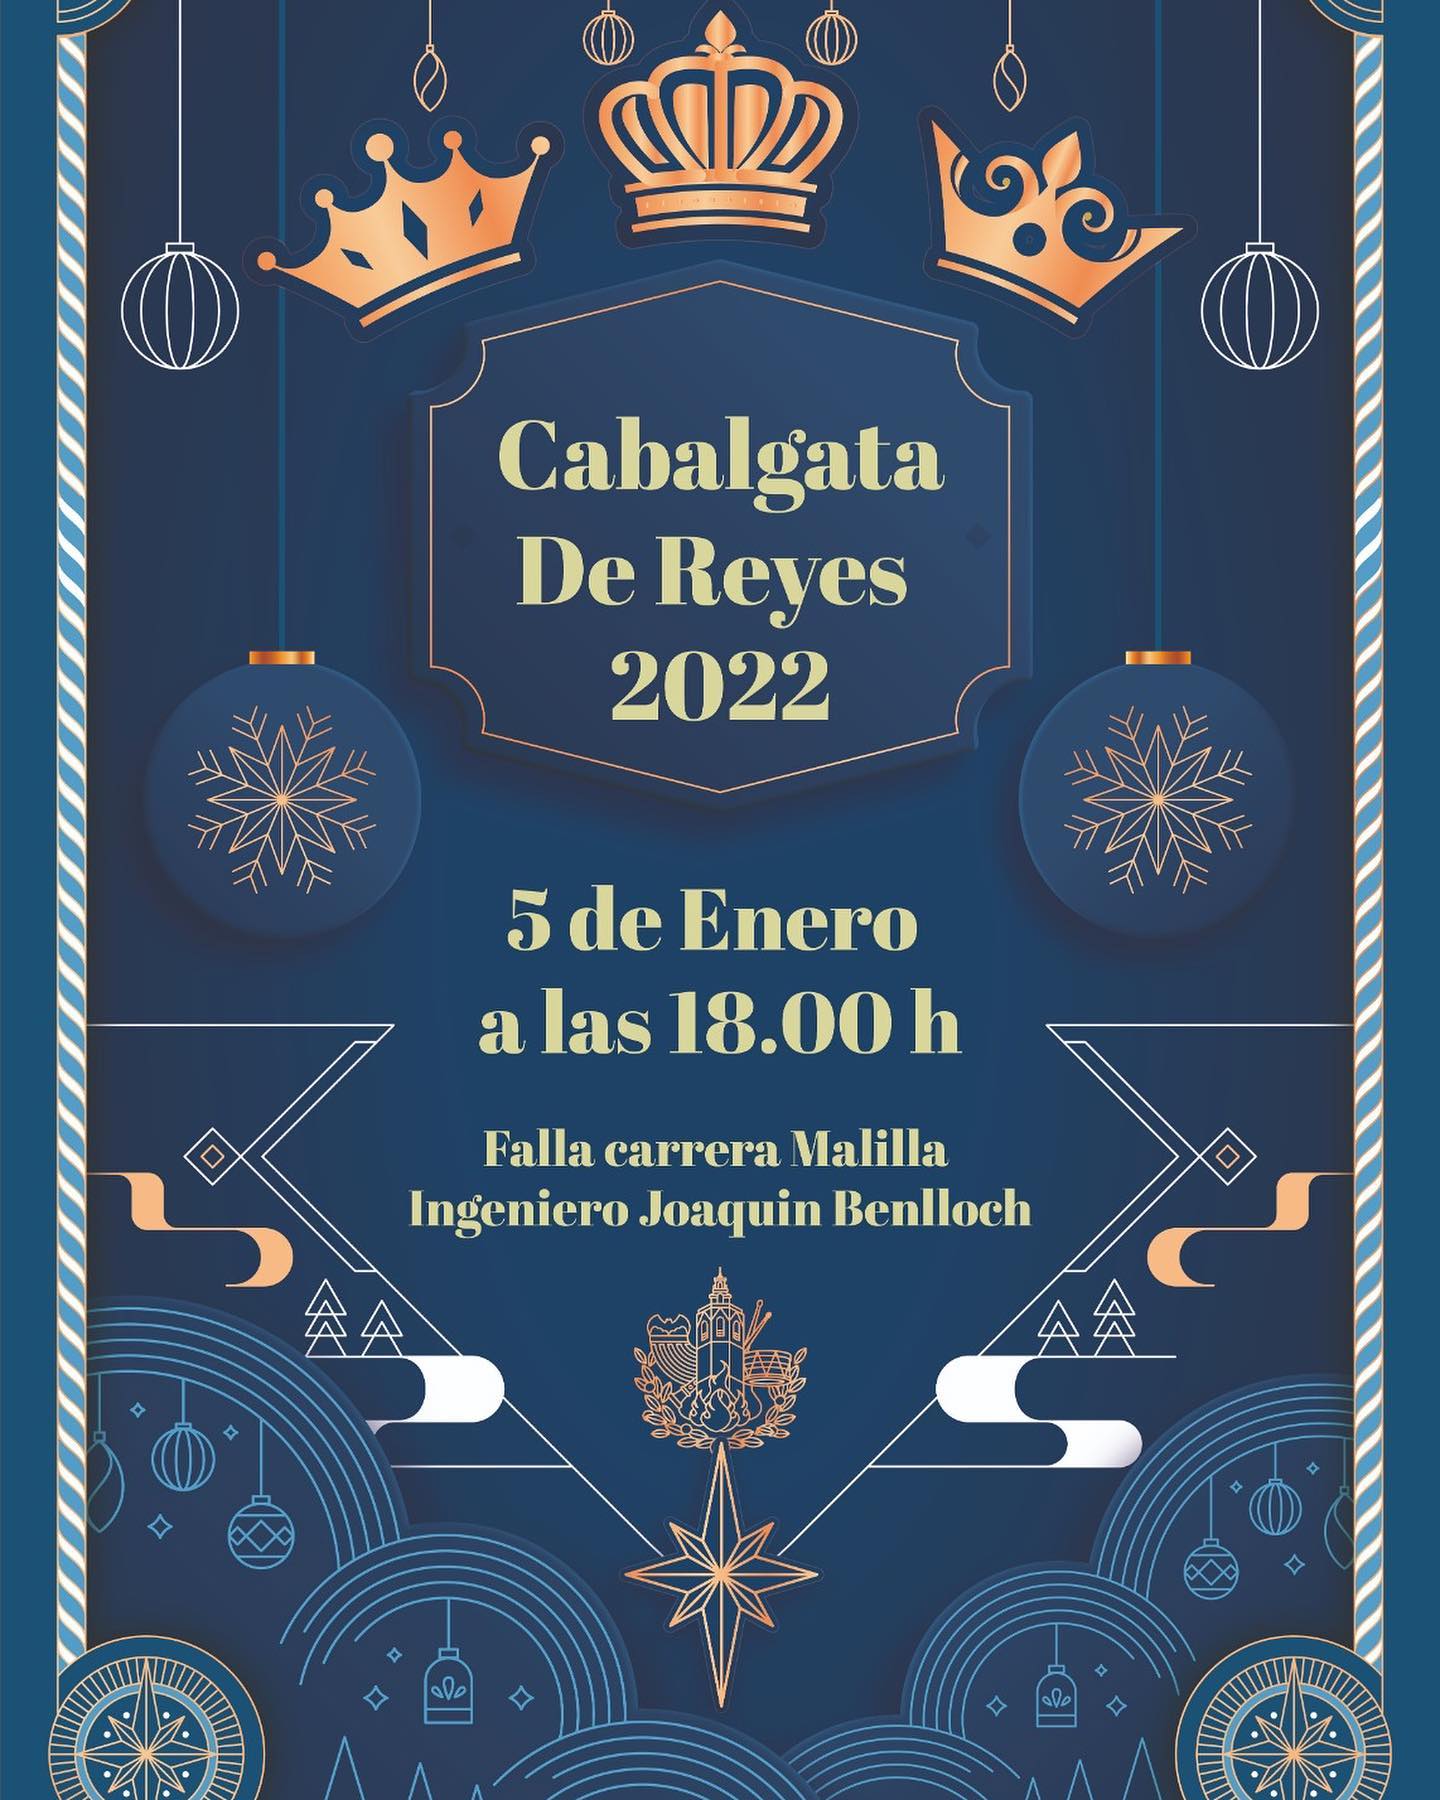 Cabalgata Reyes 2022